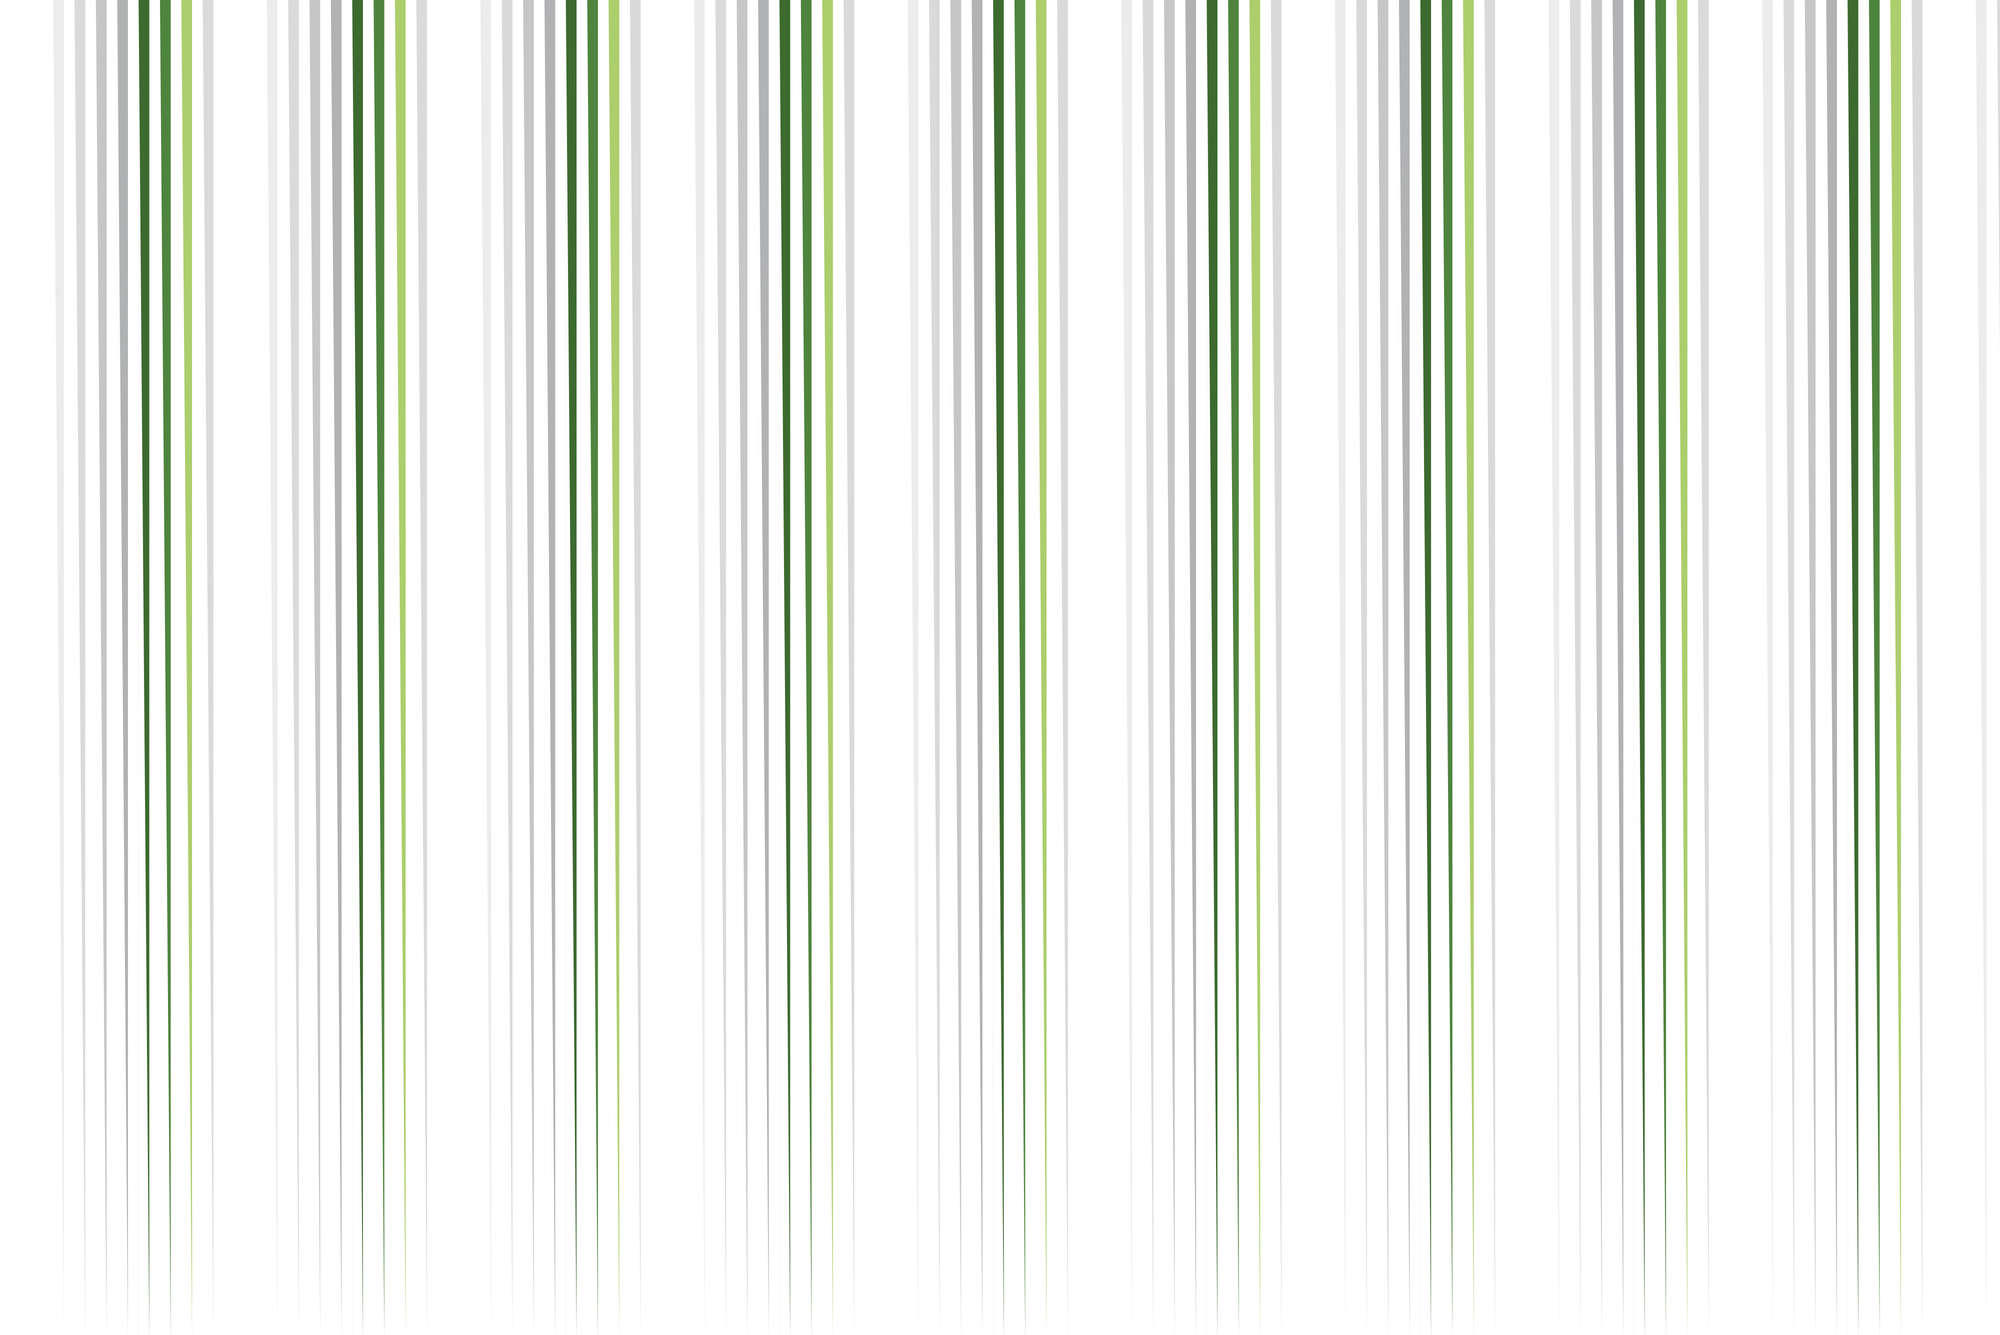             Design Fototapete dünner werdende Streifen weiß grün auf Matt Glattvlies
        